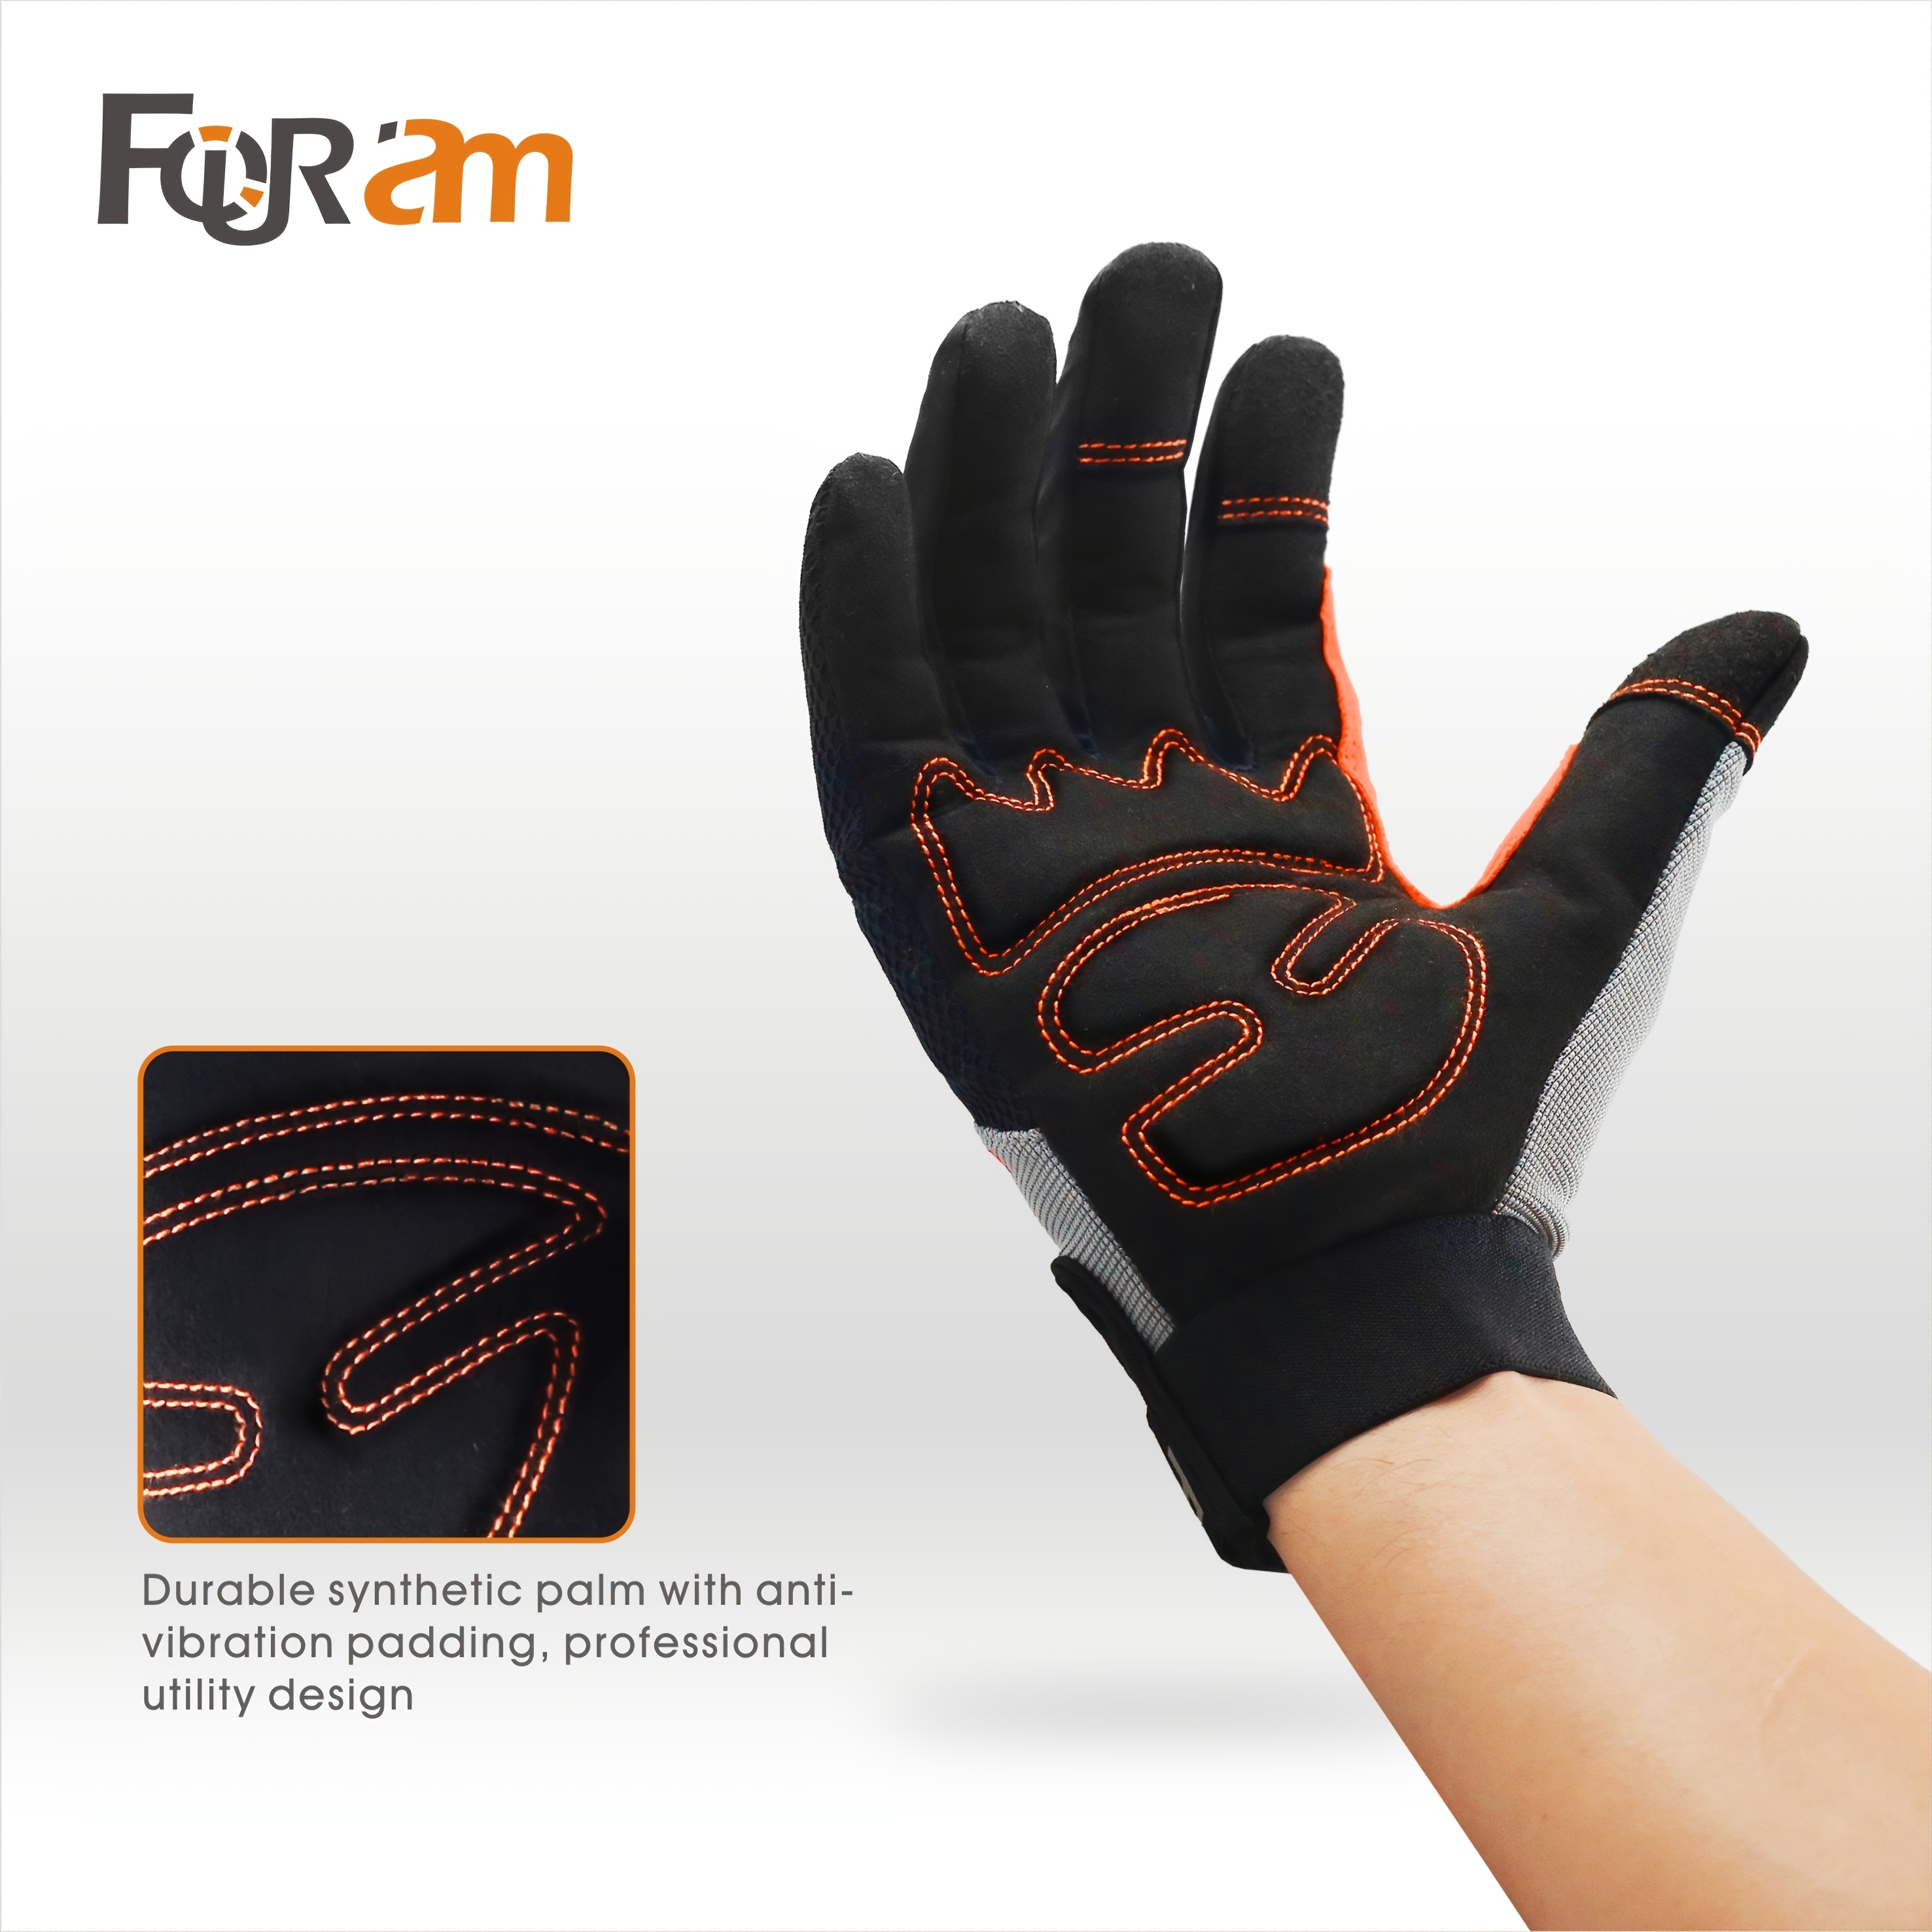 Work Gloves For Men & Women - High Dexterity Touch Screen